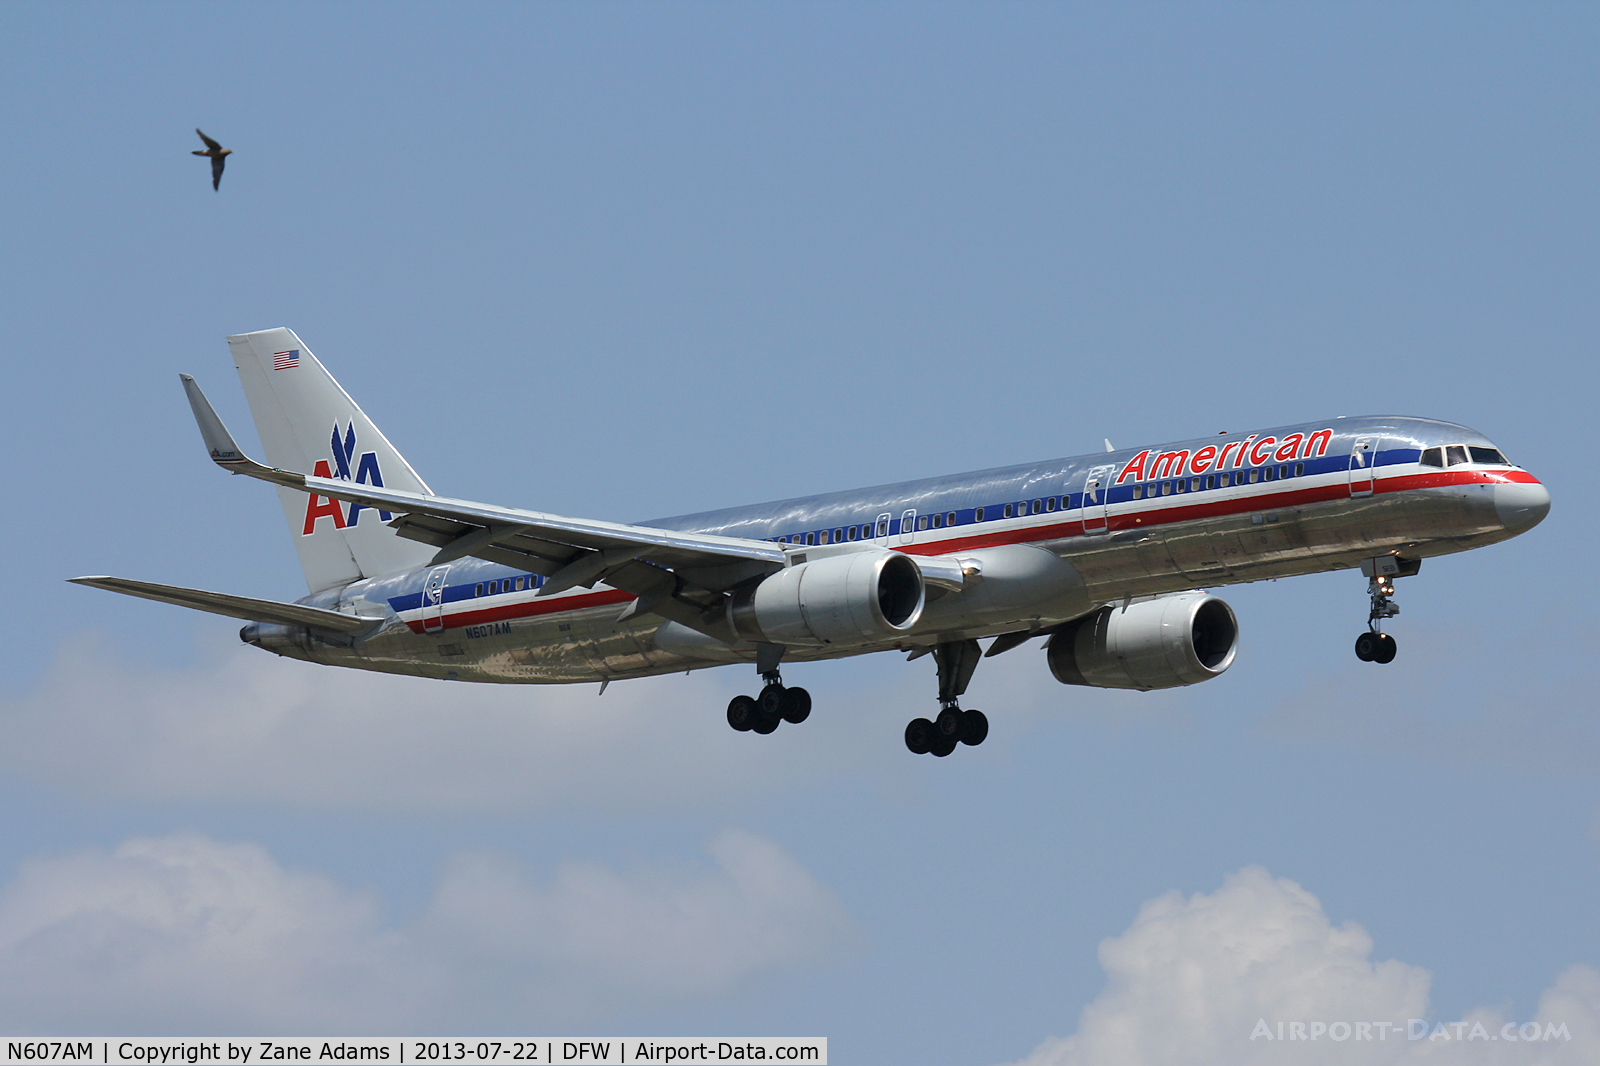 N607AM, 1996 Boeing 757-223 C/N 27058, Landing at DFW Airport